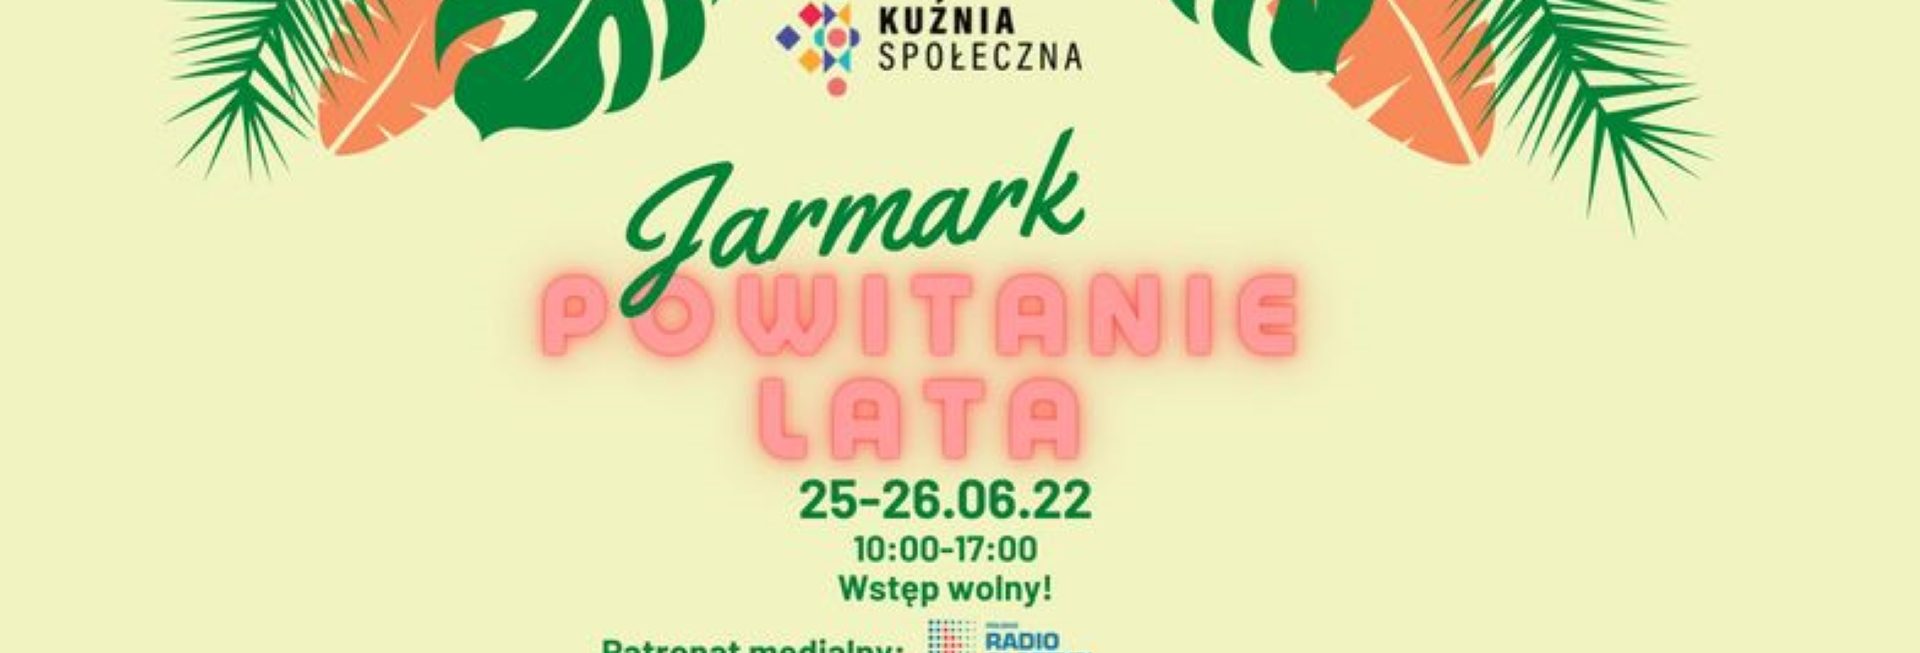 Plakat graficzny zapraszający do Olsztyna na Jarmark Powitanie Lata Olsztyn 2022.